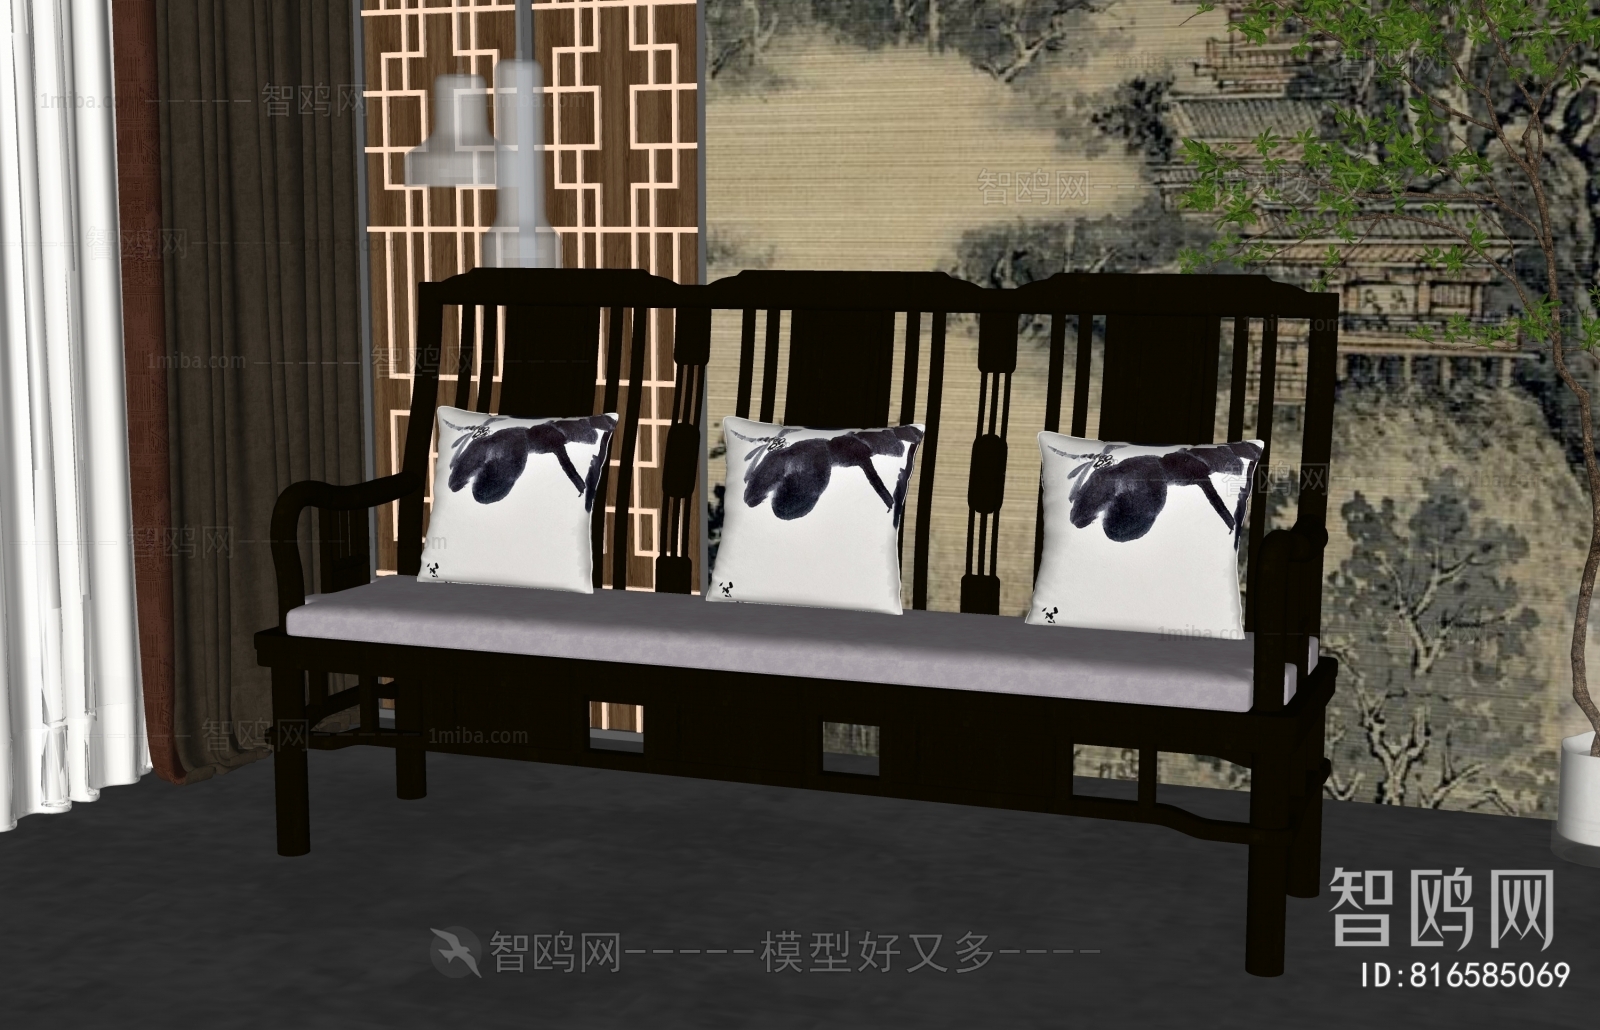 Chinese Style Three-seat Sofa